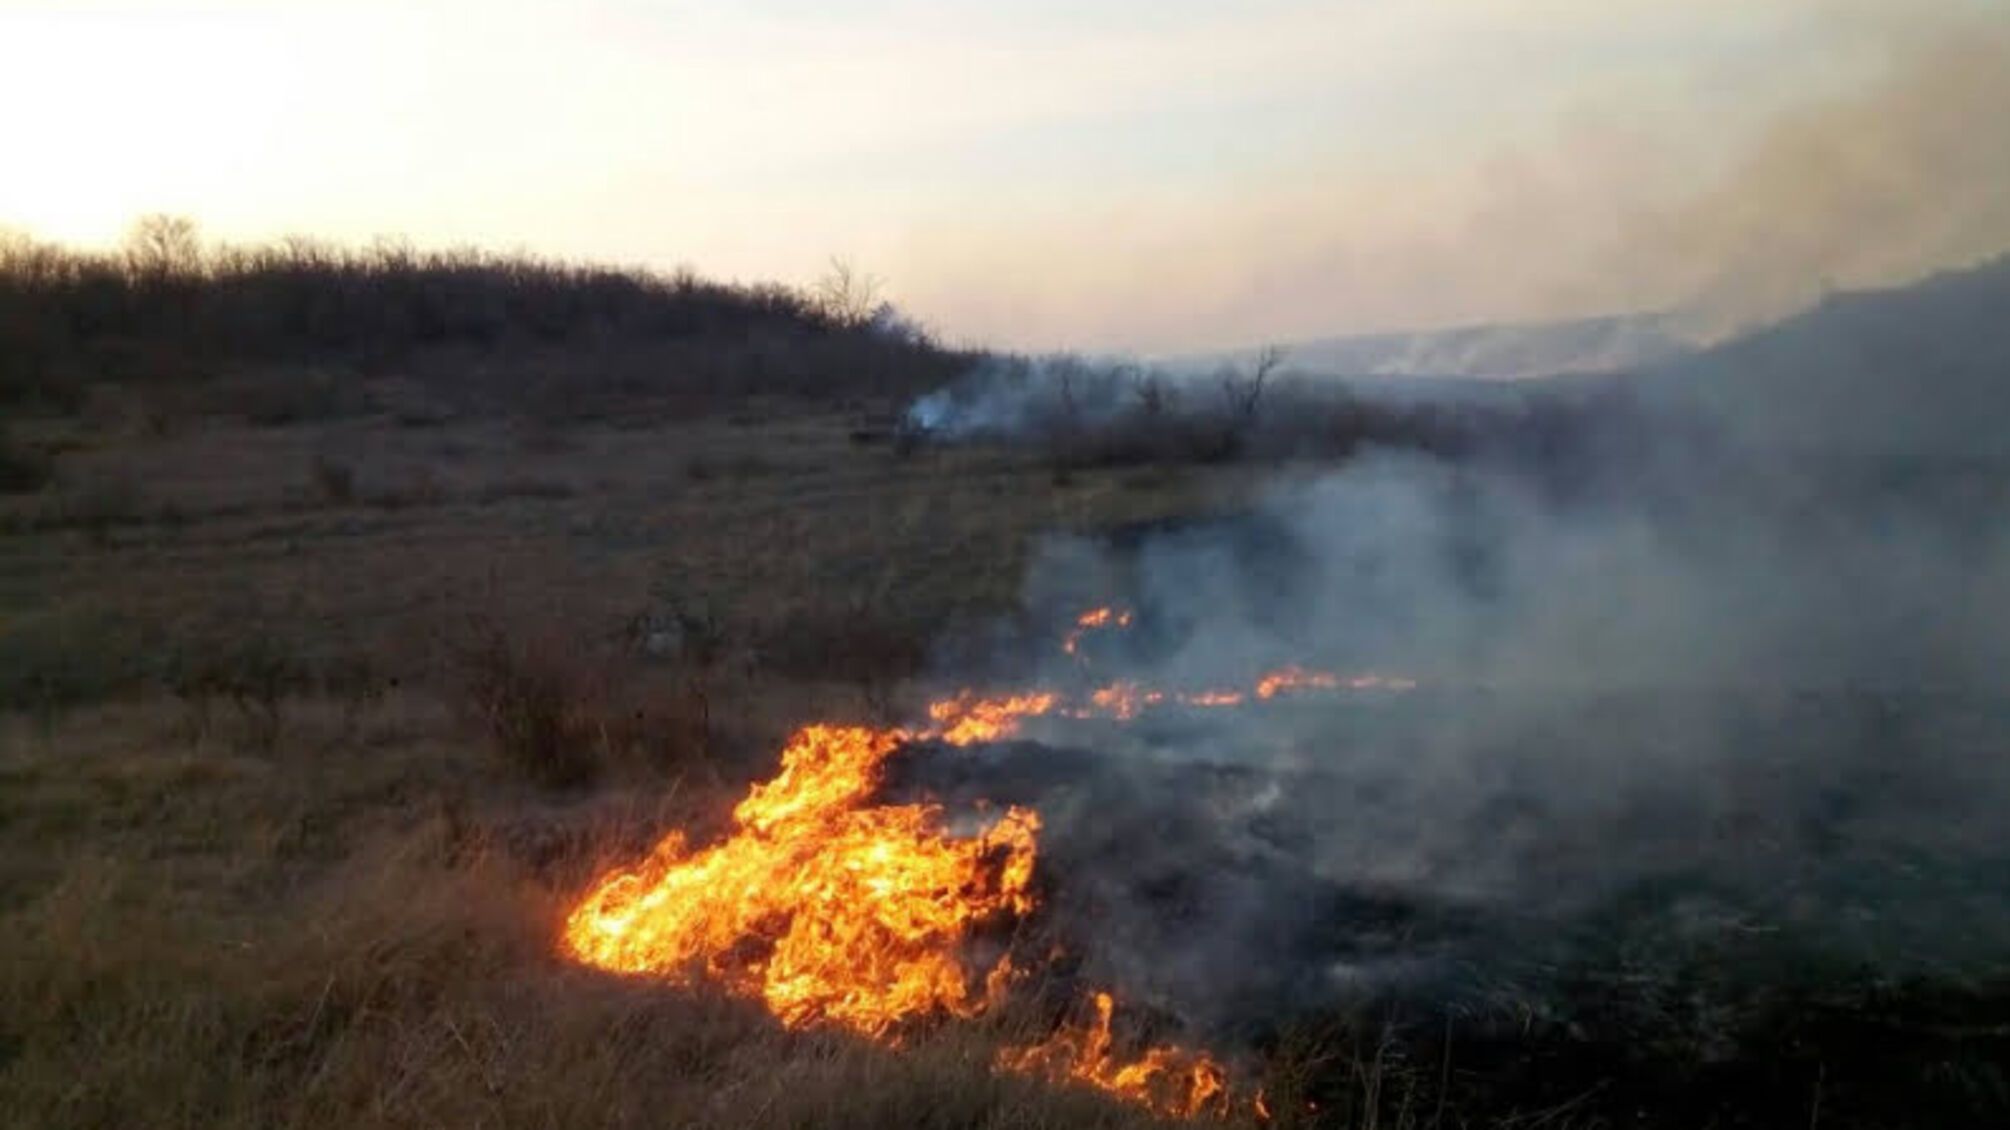 Миколаївська область: протягом доби виникло 7 пожеж на відкритій території площею понад 10 га